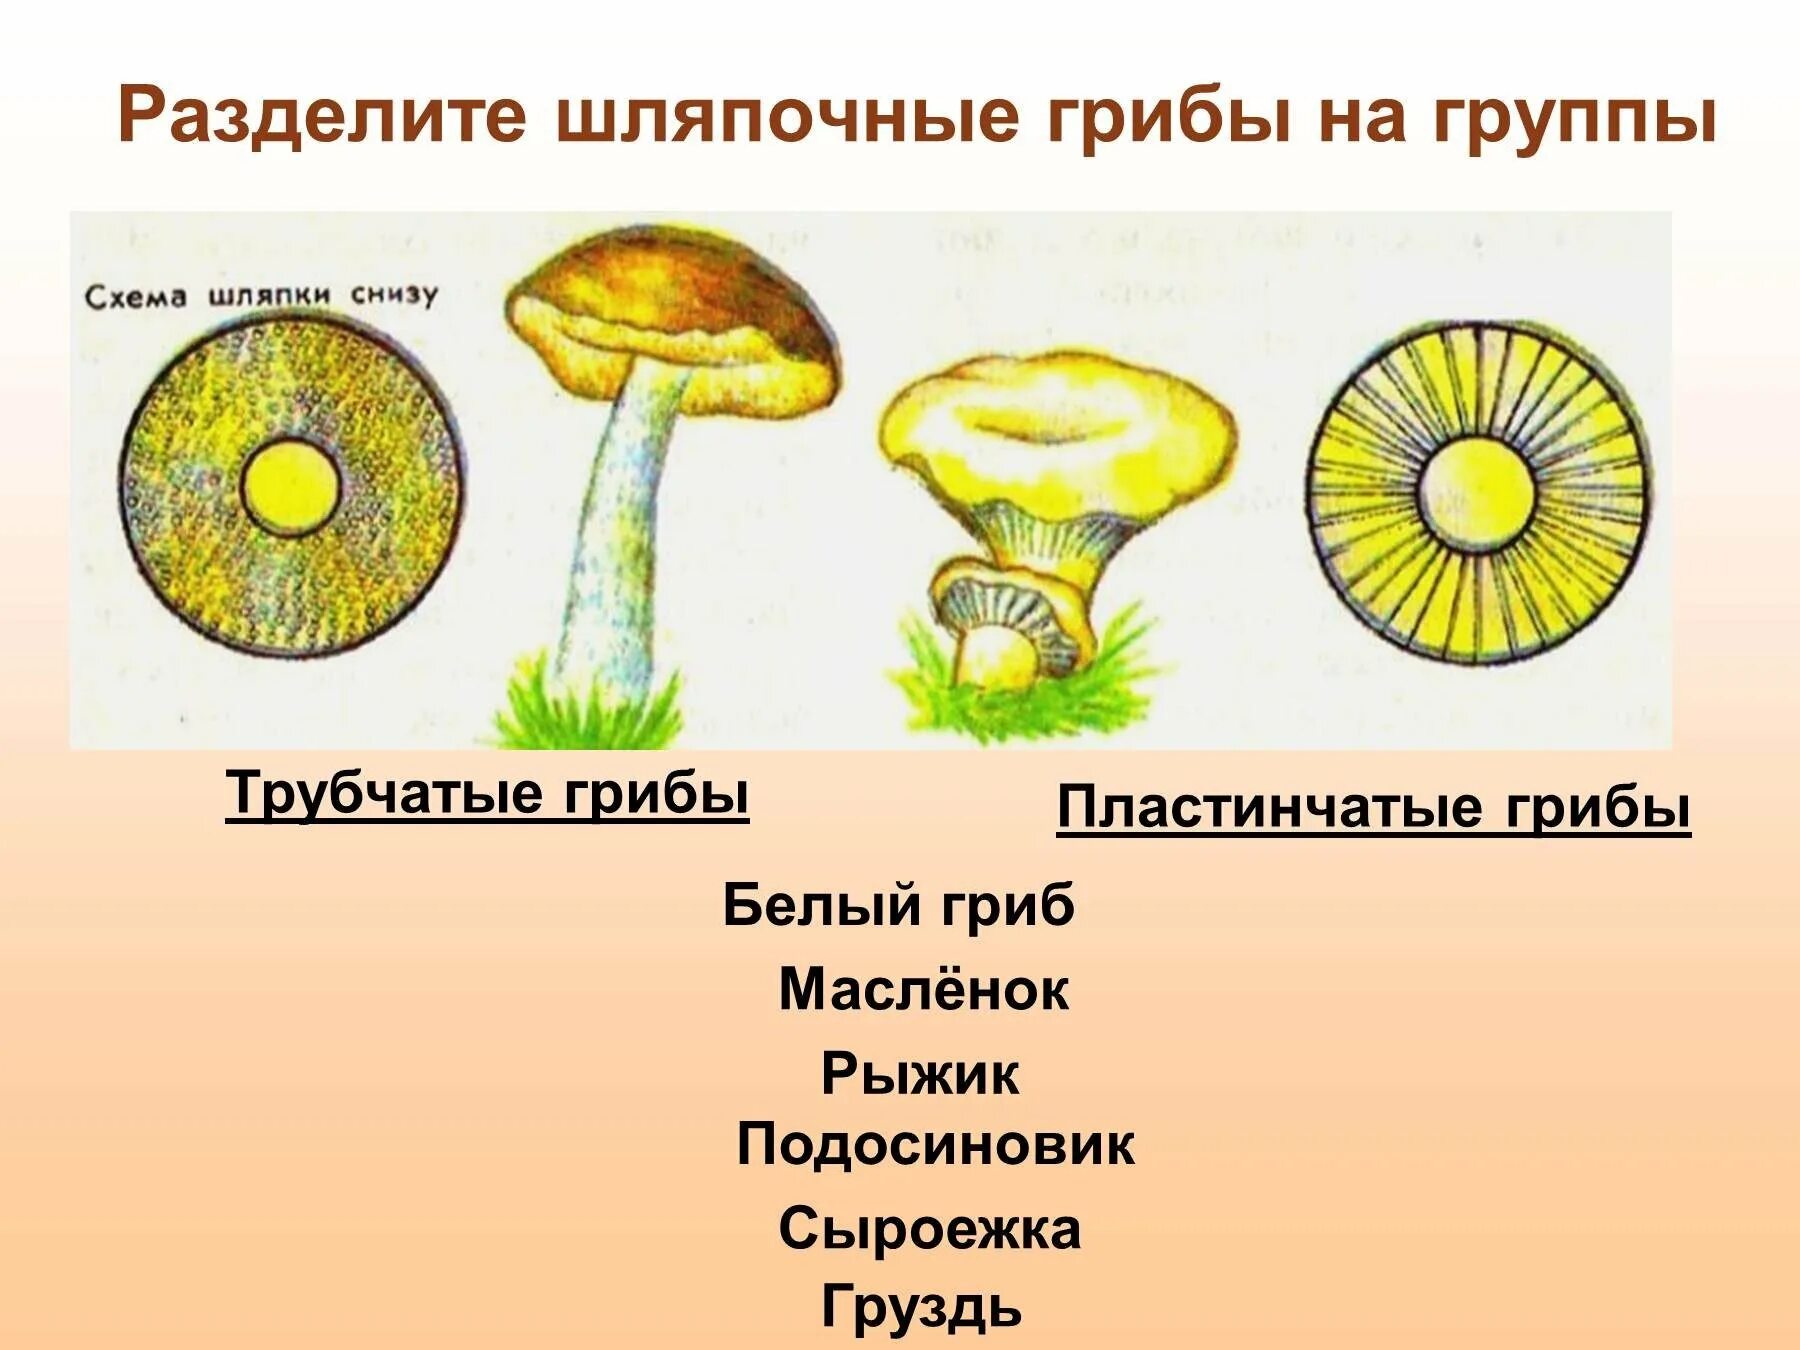 Шляпочные грибы трубчатые и пластинчатые. Трубчатые Шляпочные грибы Рыжик. Трубчатые и пластинчатые грибы 5 класс биология. Трубчатые Шляпочные грибы масленок. Шляпочные грибы состоят из шляпки